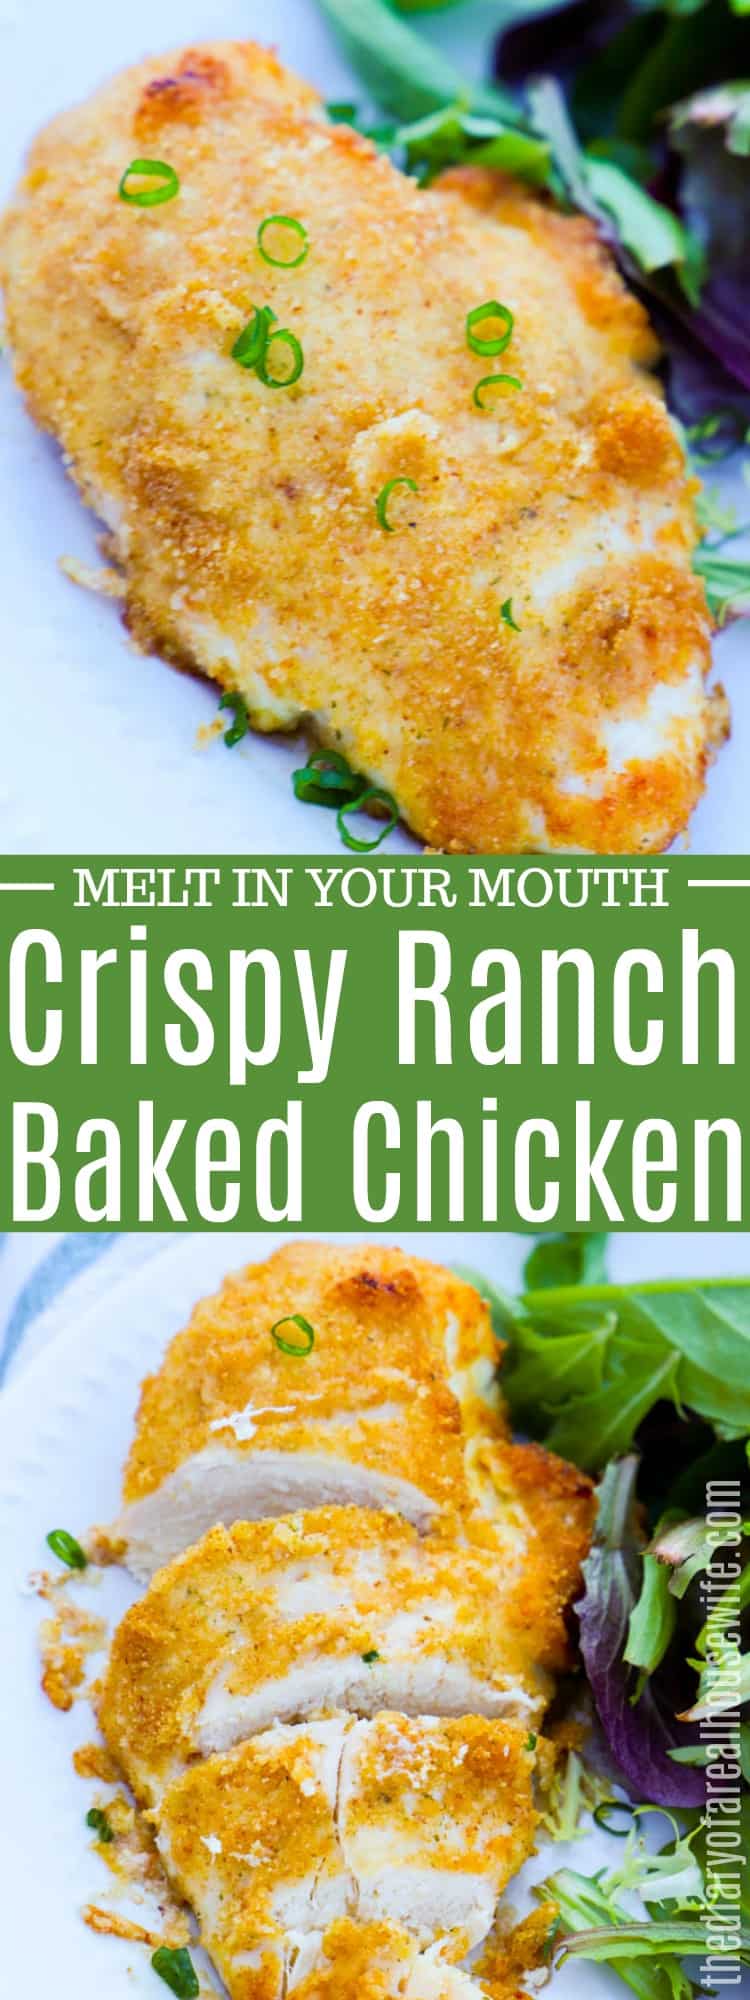 Crispy Ranch Baked Chicken